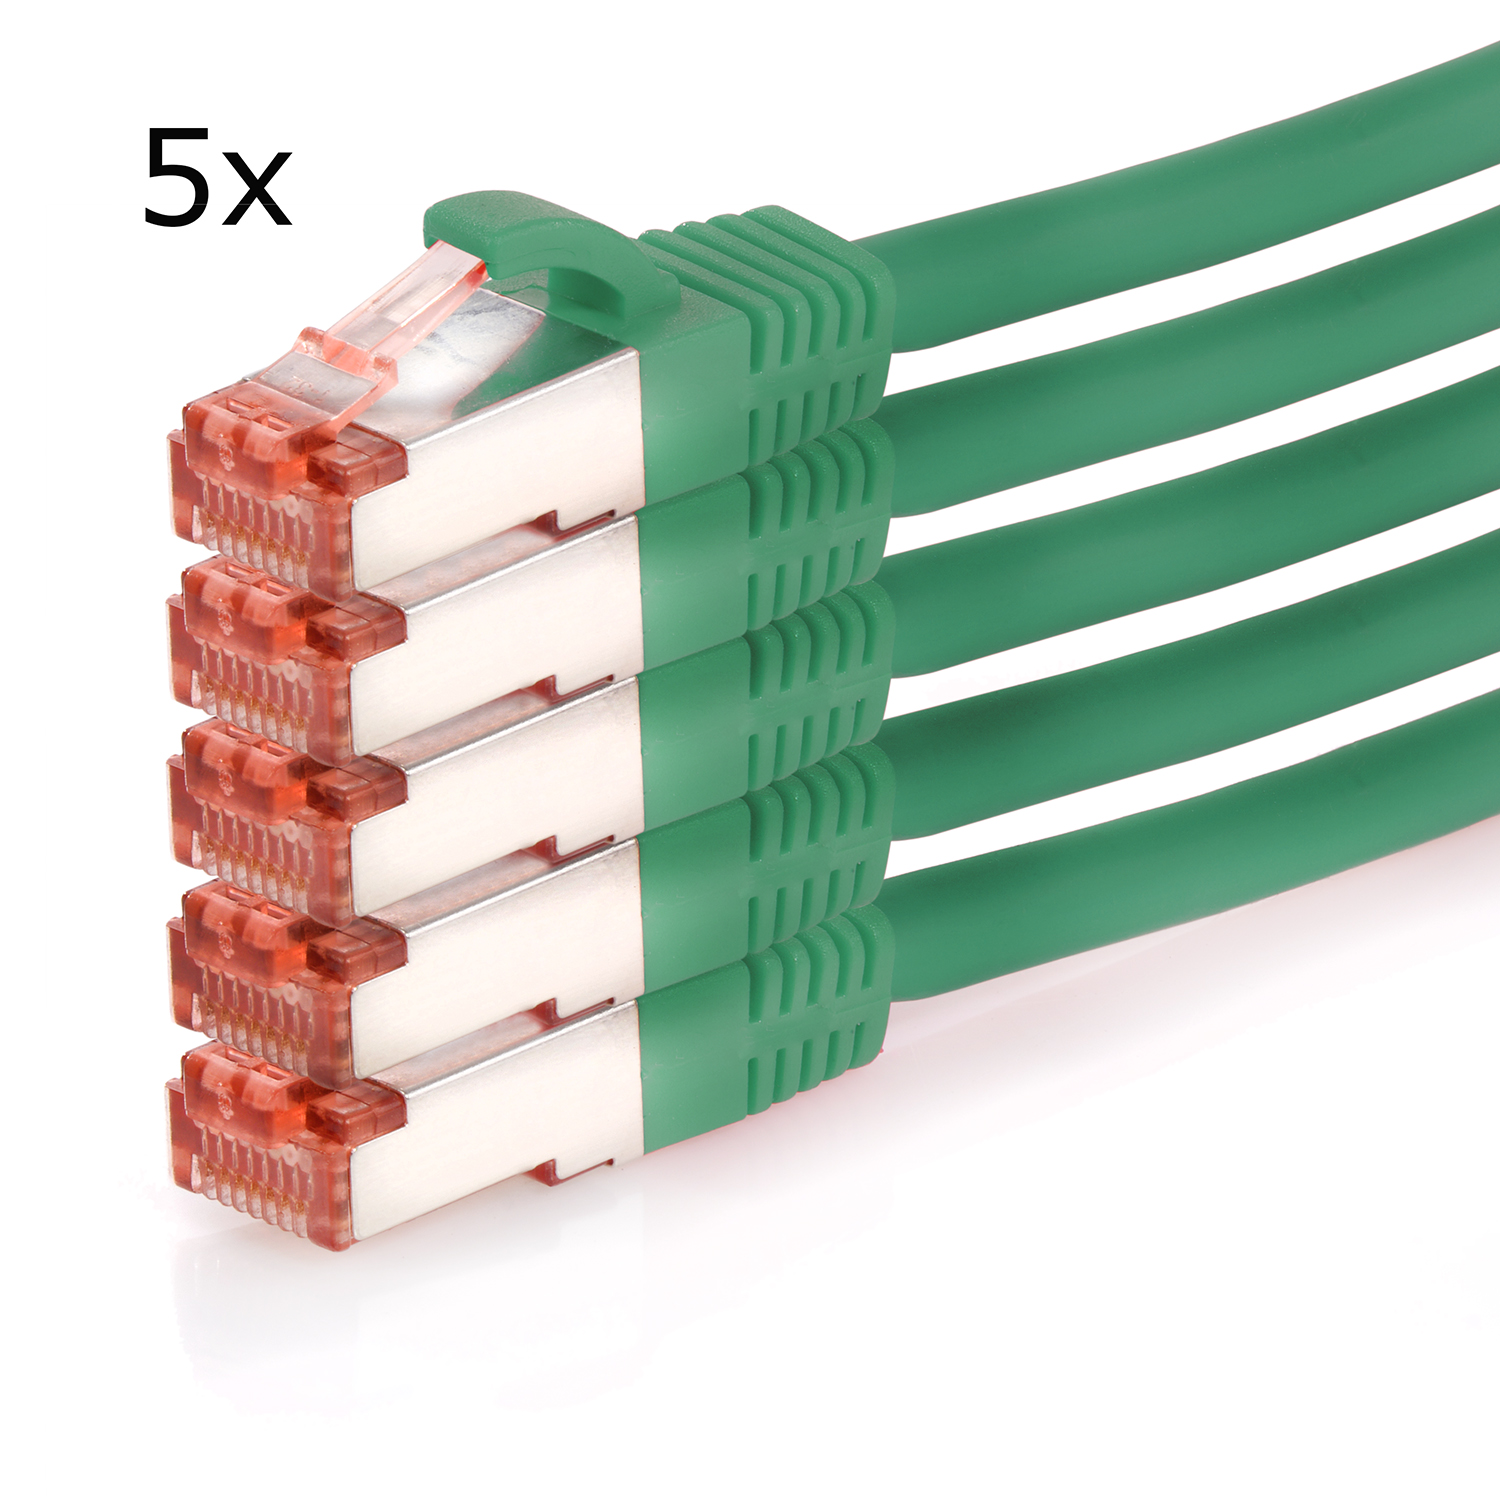 / 5er 1000Mbit, Netzwerkkabel, 3 m TPFNET S/FTP grün, Pack 3m Netzwerkkabel Patchkabel